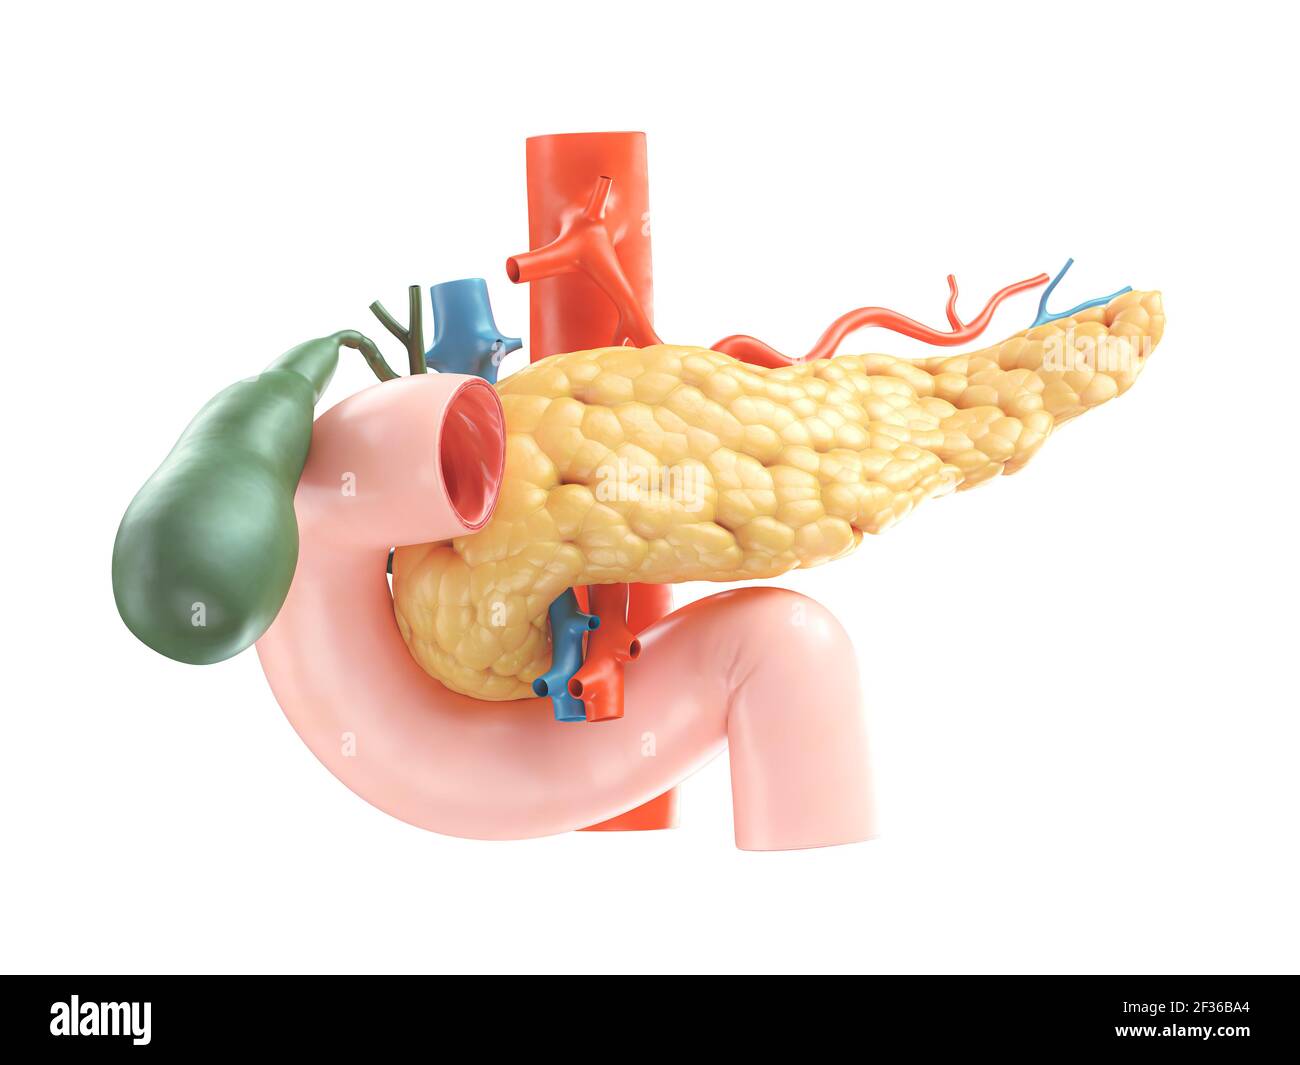 Illustration anatomique précise du pancréas humain avec vésicule biliaire, duodénum et vaisseaux sanguins. rendu 3d Banque D'Images